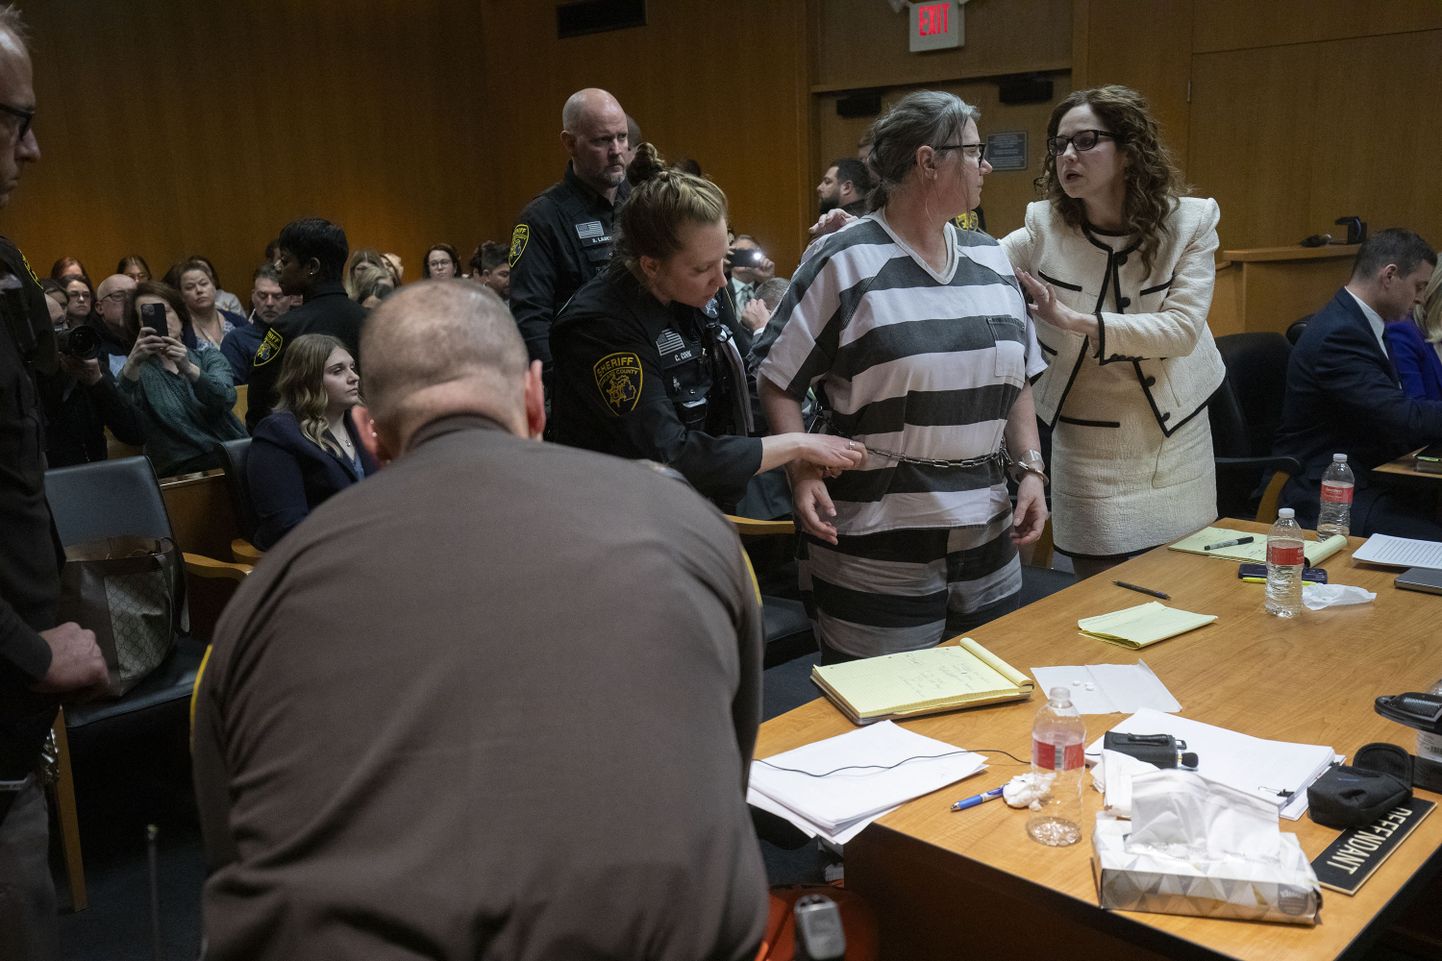 Oxfordi keskkooli massimõrvar Ethan Crumbley ema Jennifer Crumbley kohtusaalis pärast saatuslikku kohtuotsust 9. aprillil 2024. a.